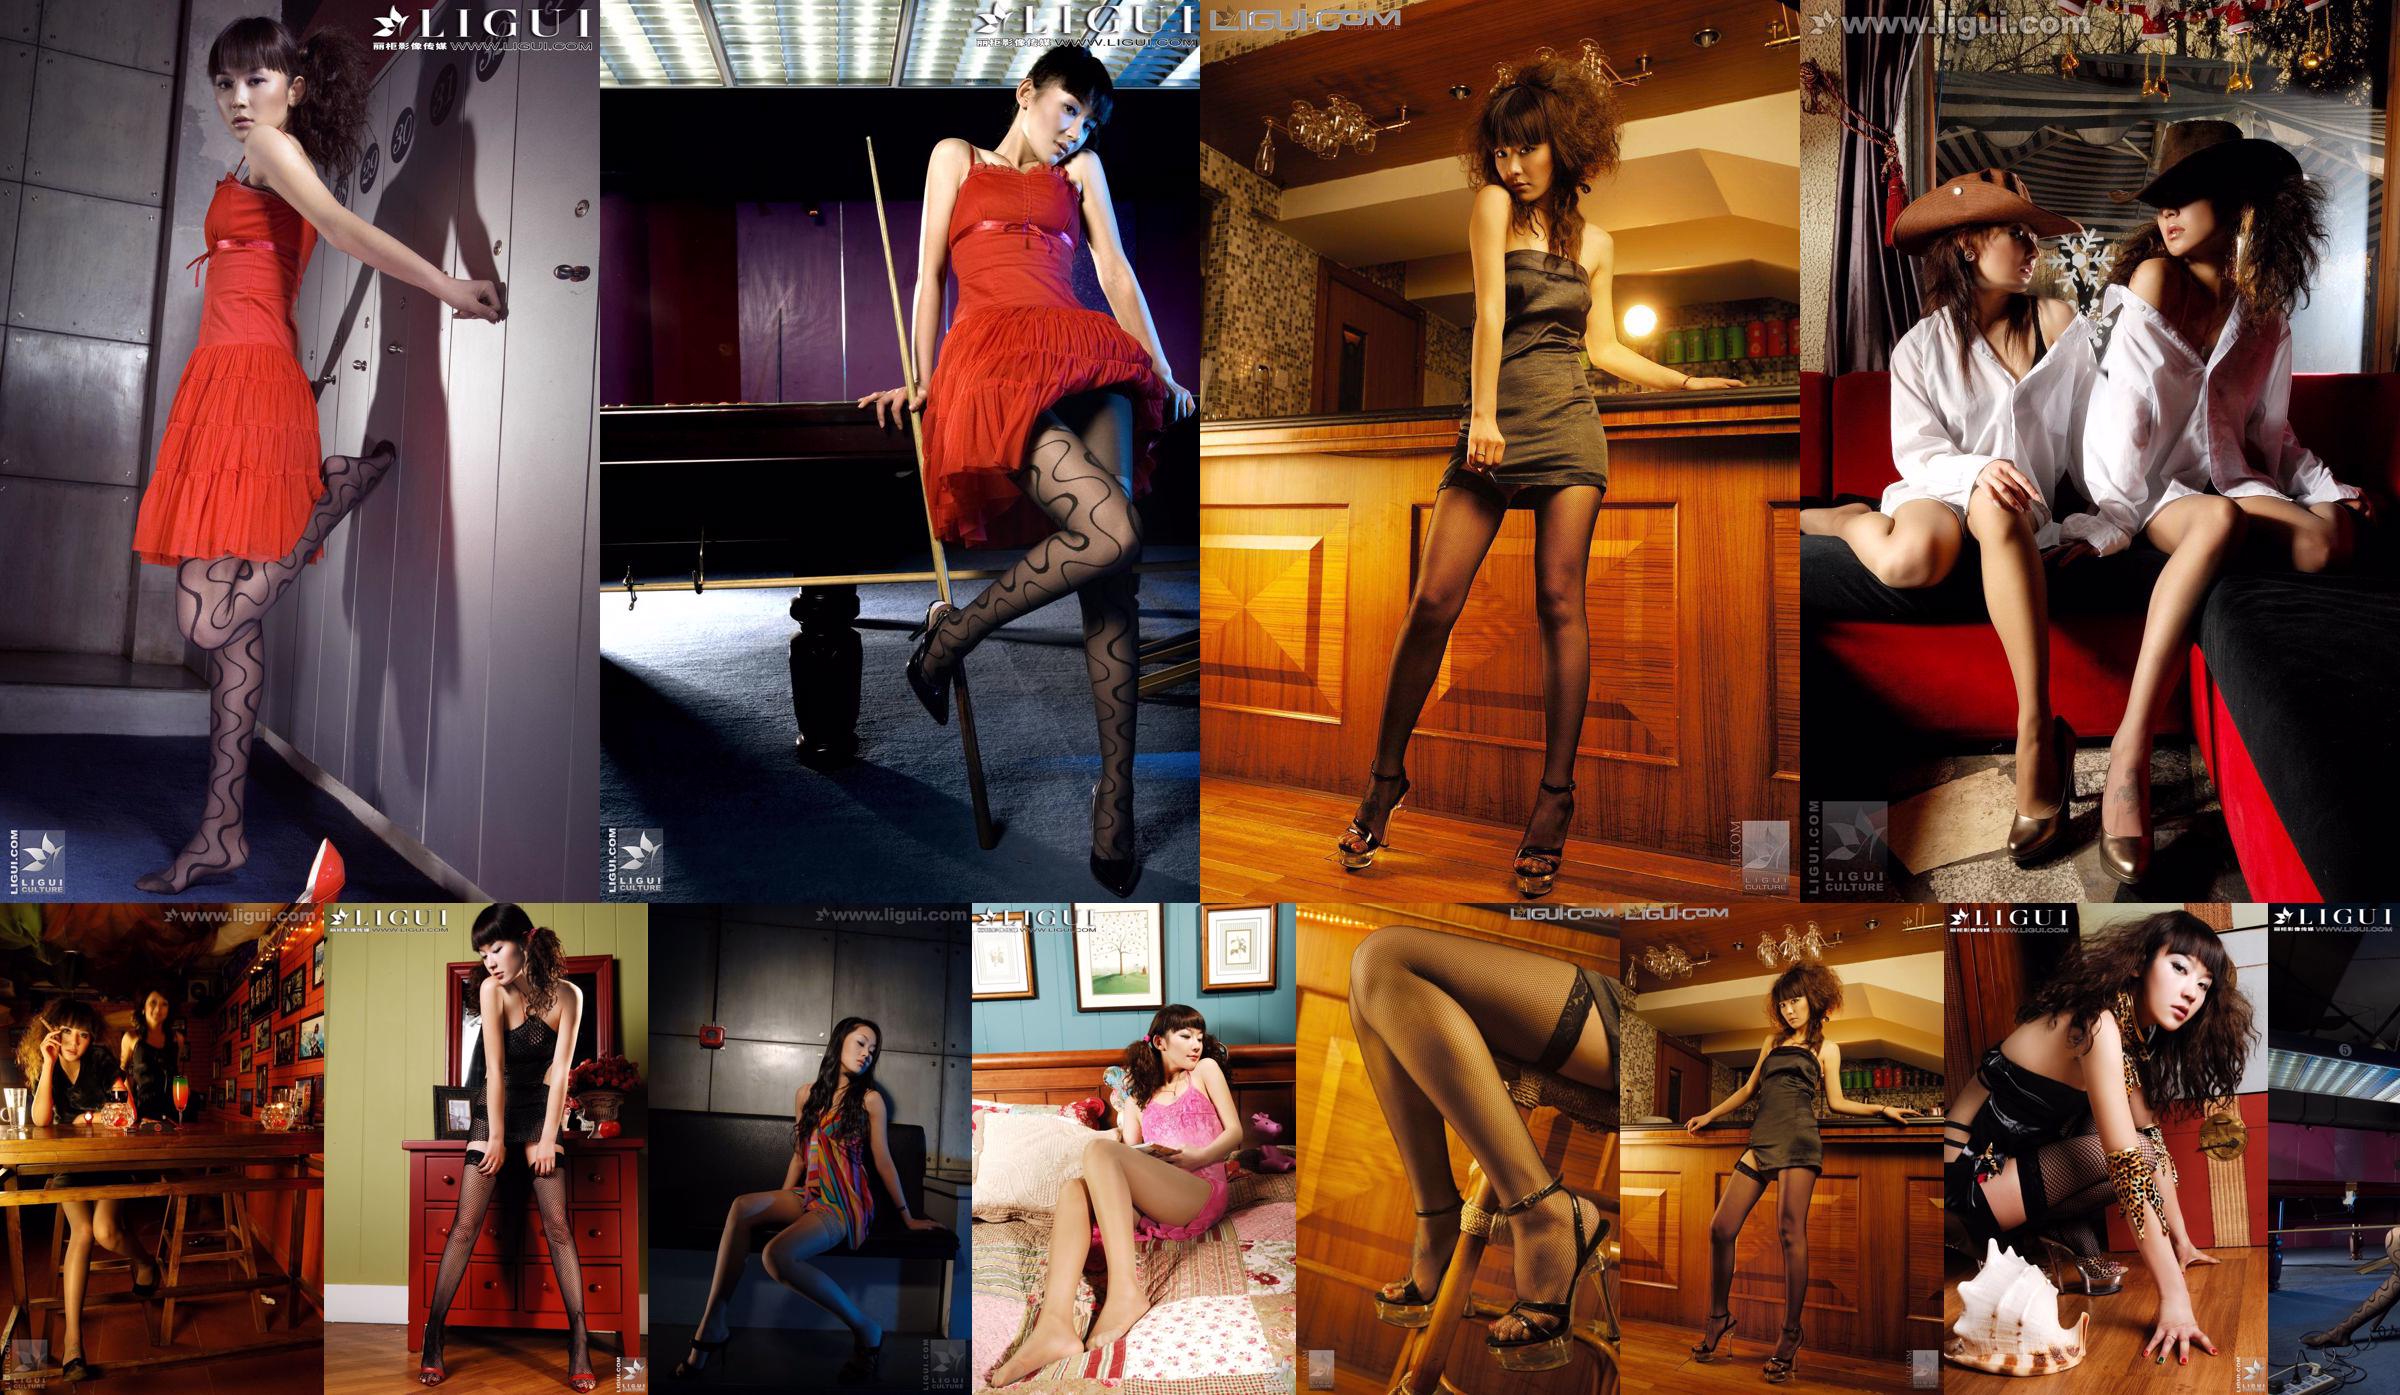 [丽 柜 LiGui] Model Mi Huimei, kelly "The Temptation of Stockings" Gambar Foto Kaki Indah dan Kaki Giok No.b75837 Halaman 1